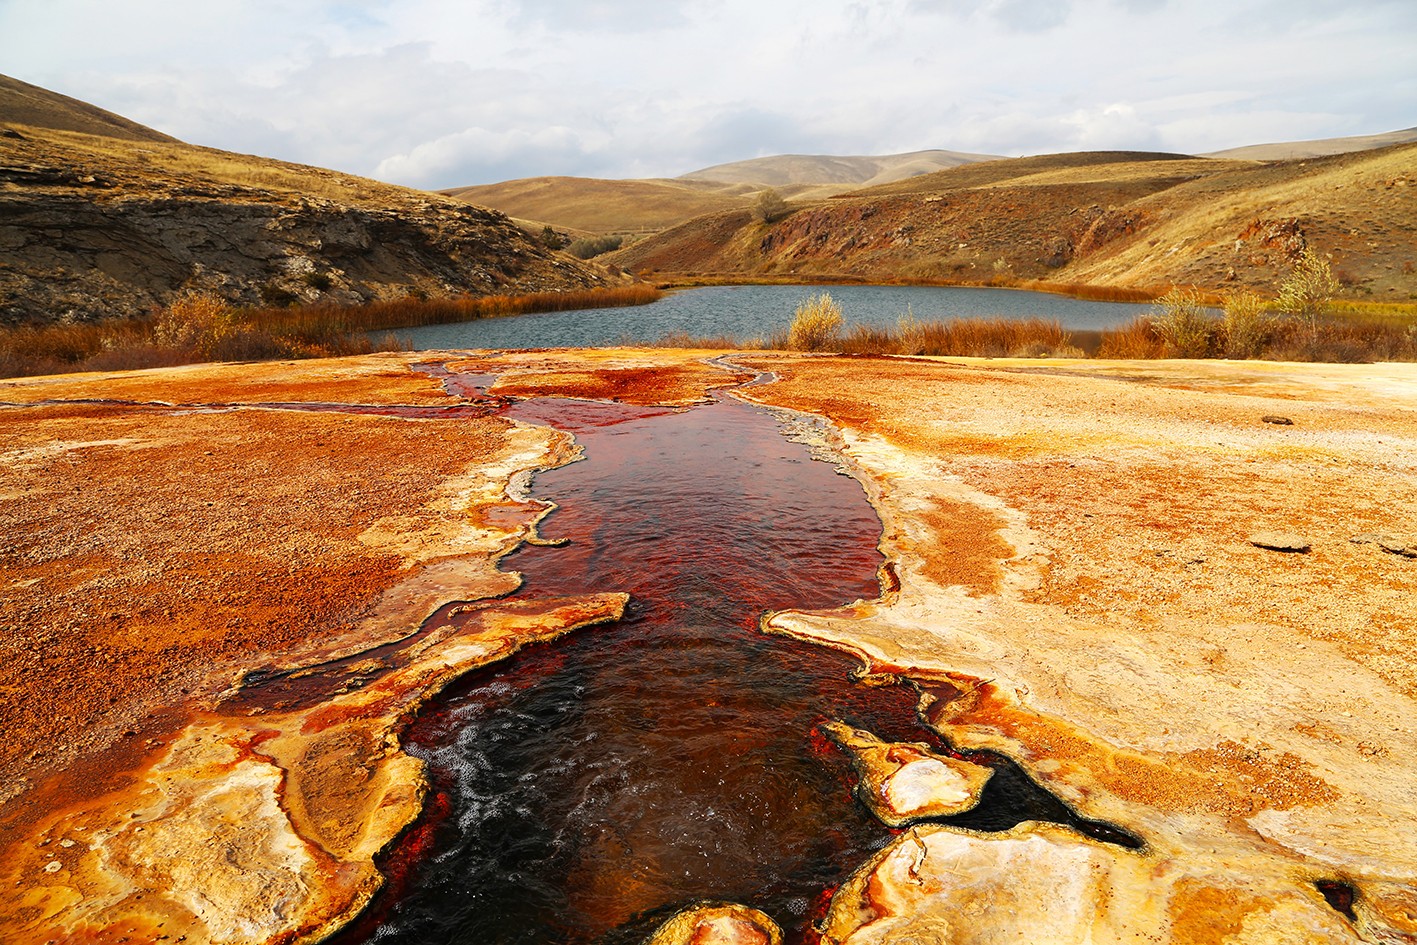 Otlukbeli gölüne turizm yatırımı #erzincan